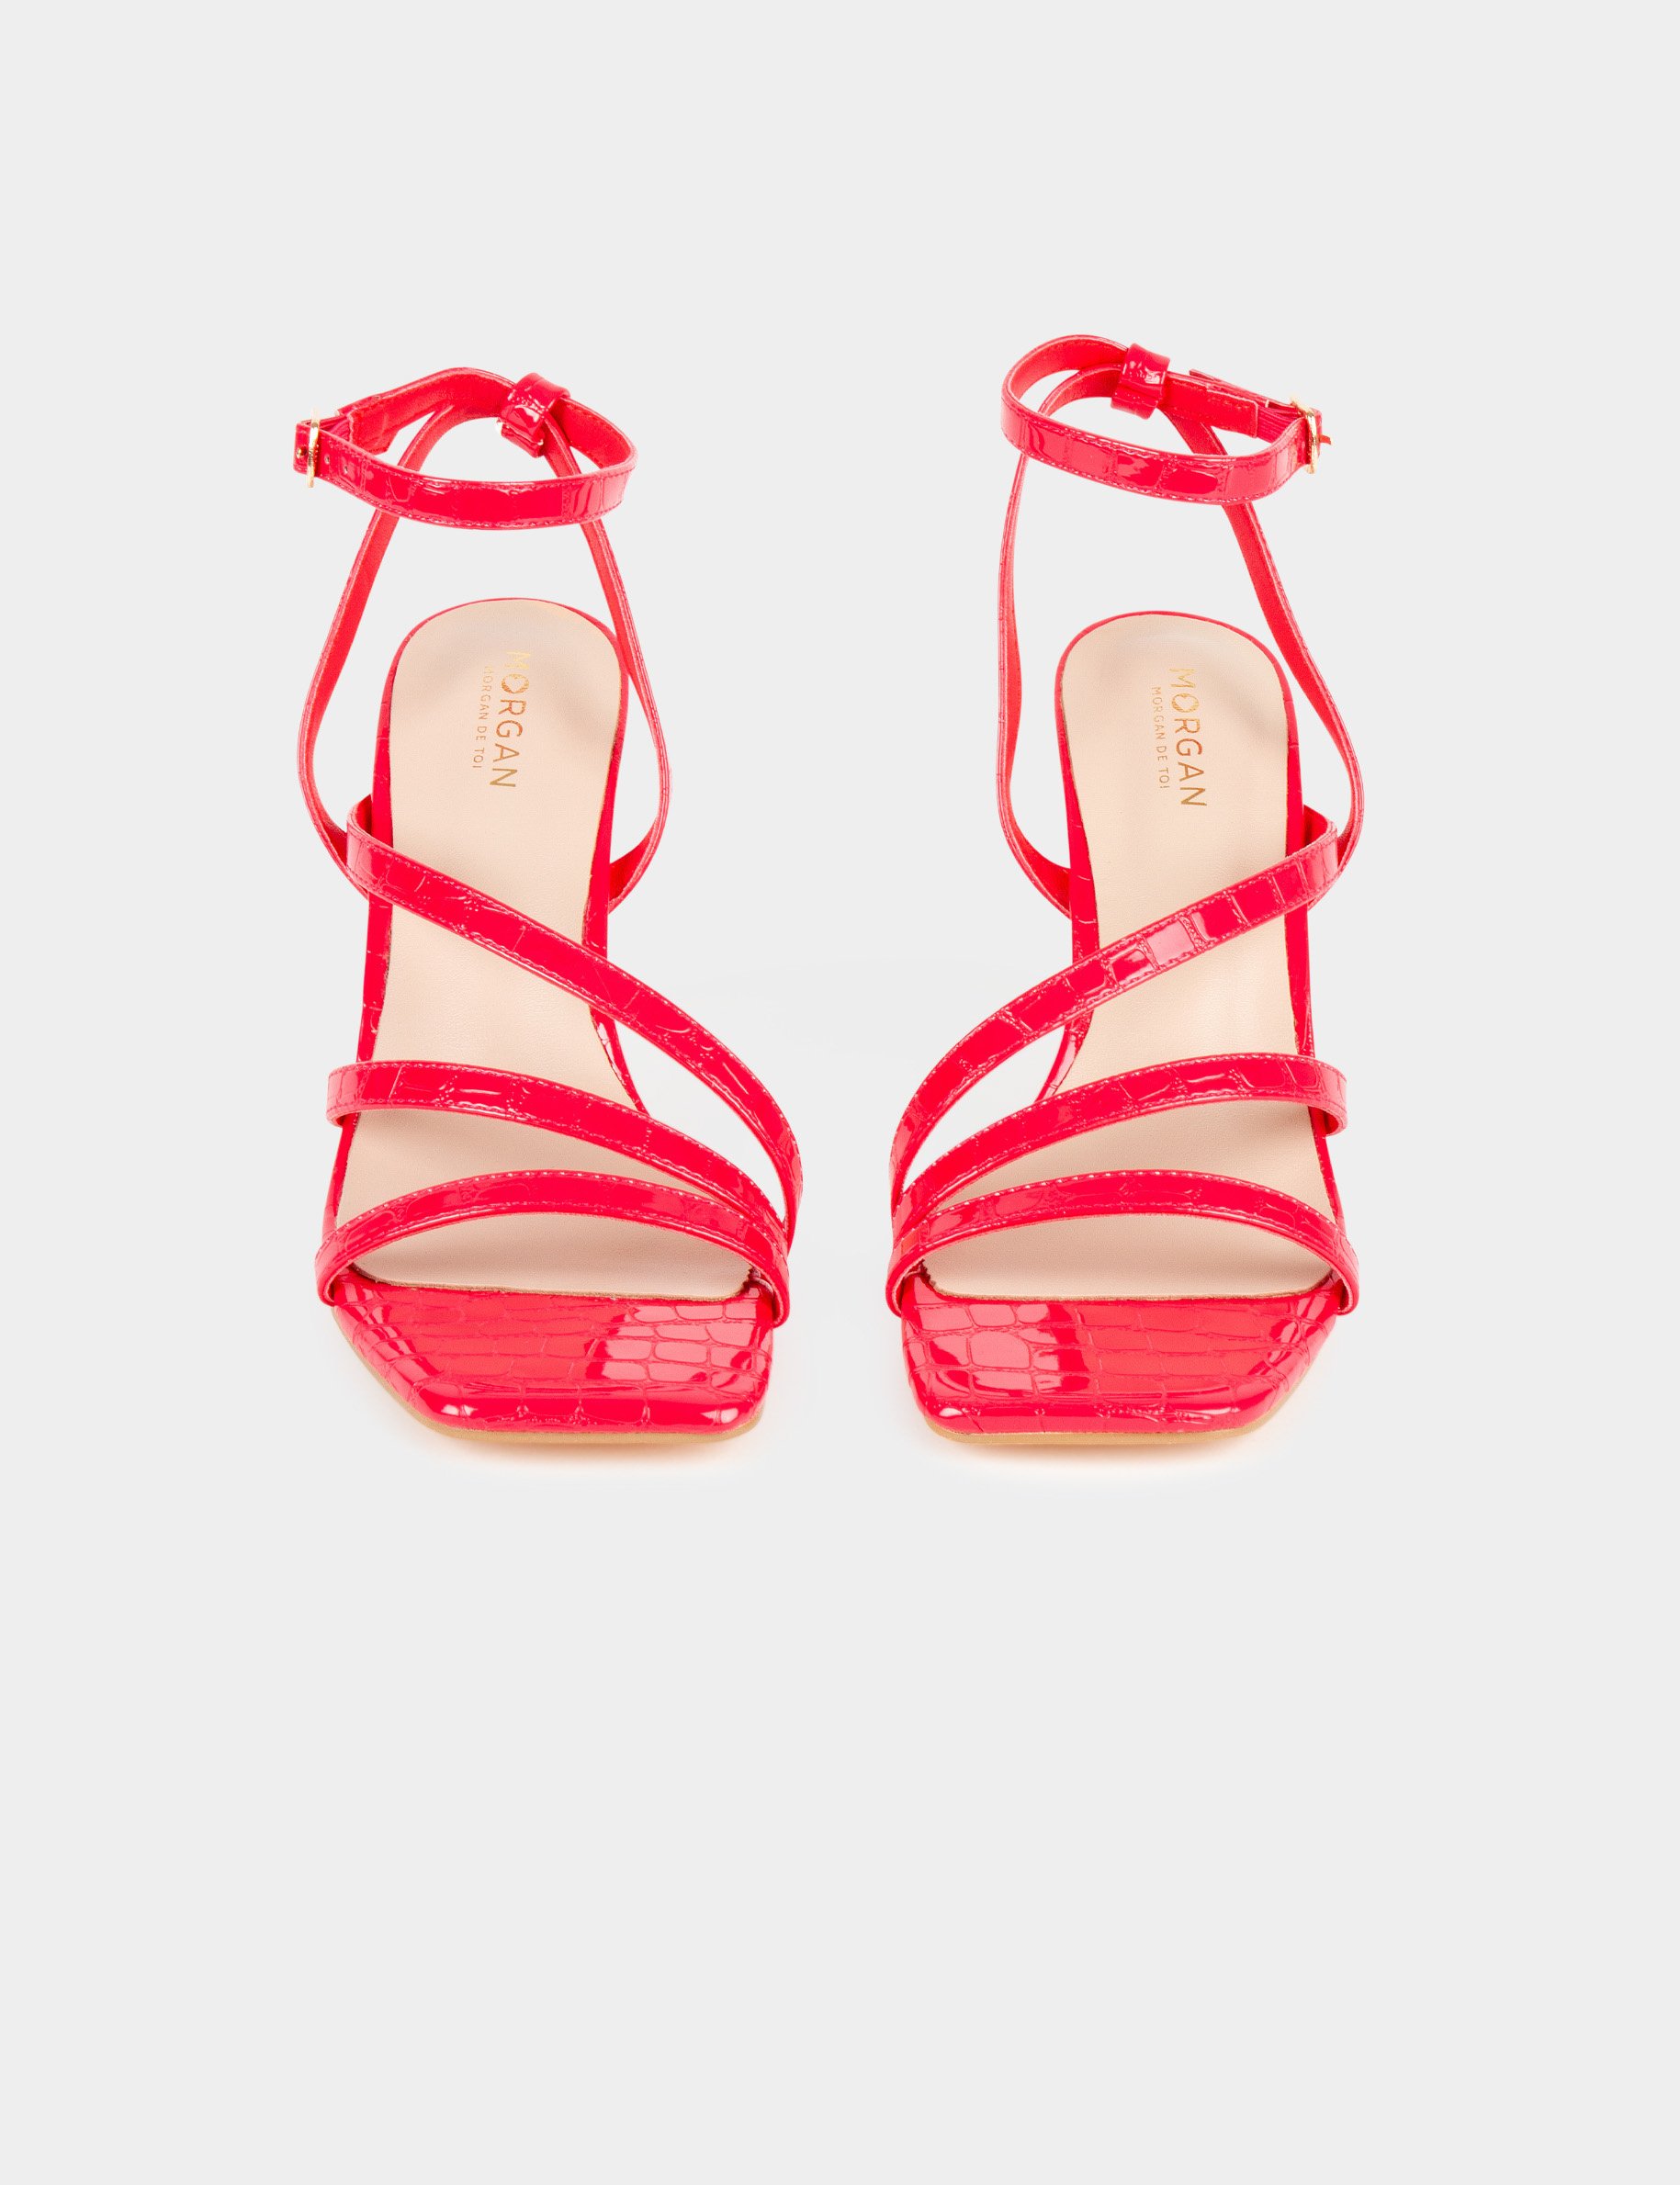 Gelakte sandalen met krokodillenhakken medium rood vrouw